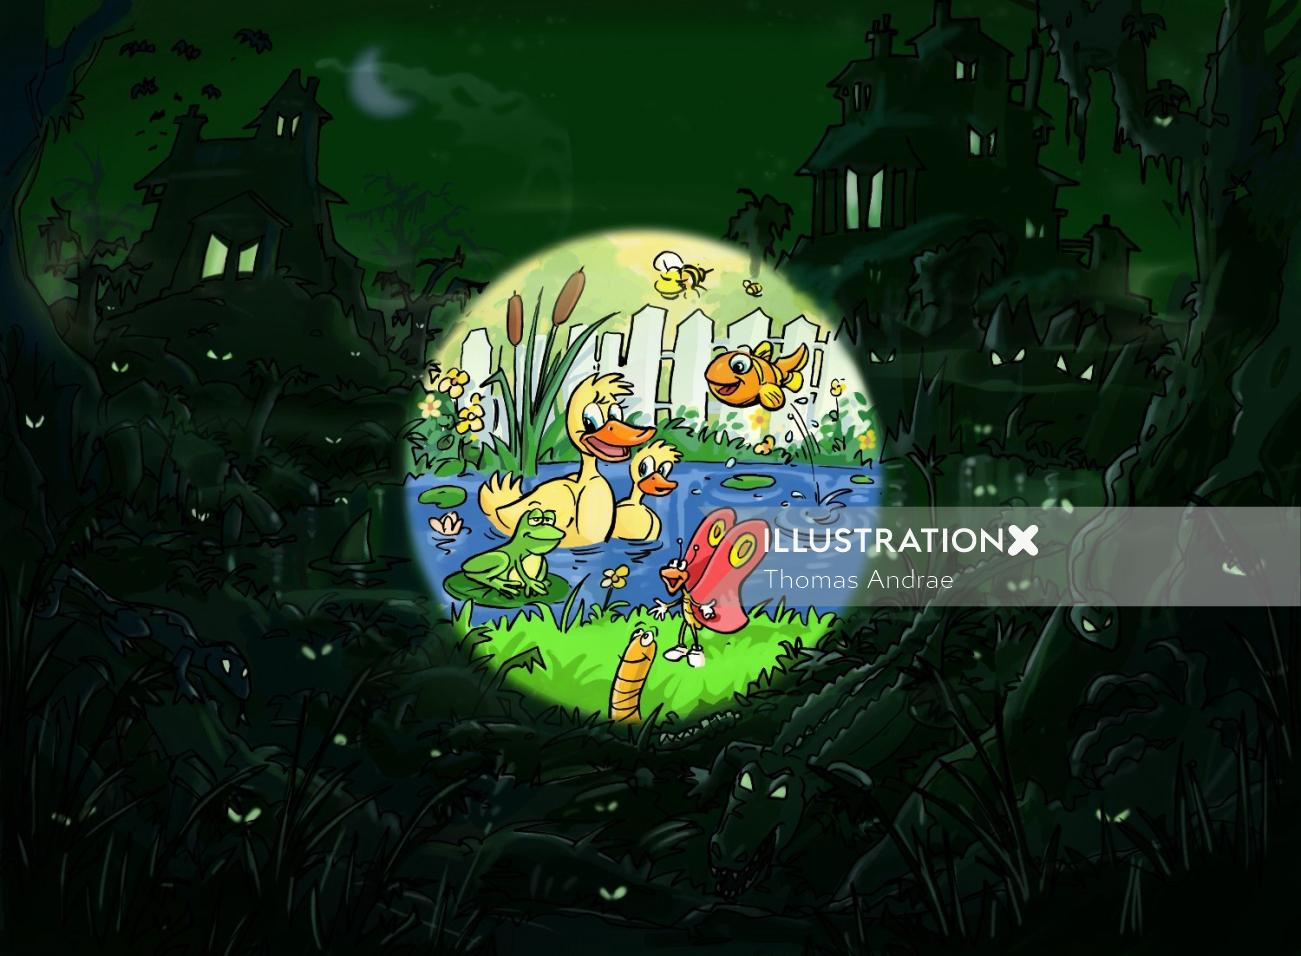 暗闇の中でのジャングル、池のアヒル、画像内の鳥を強調する明るい円